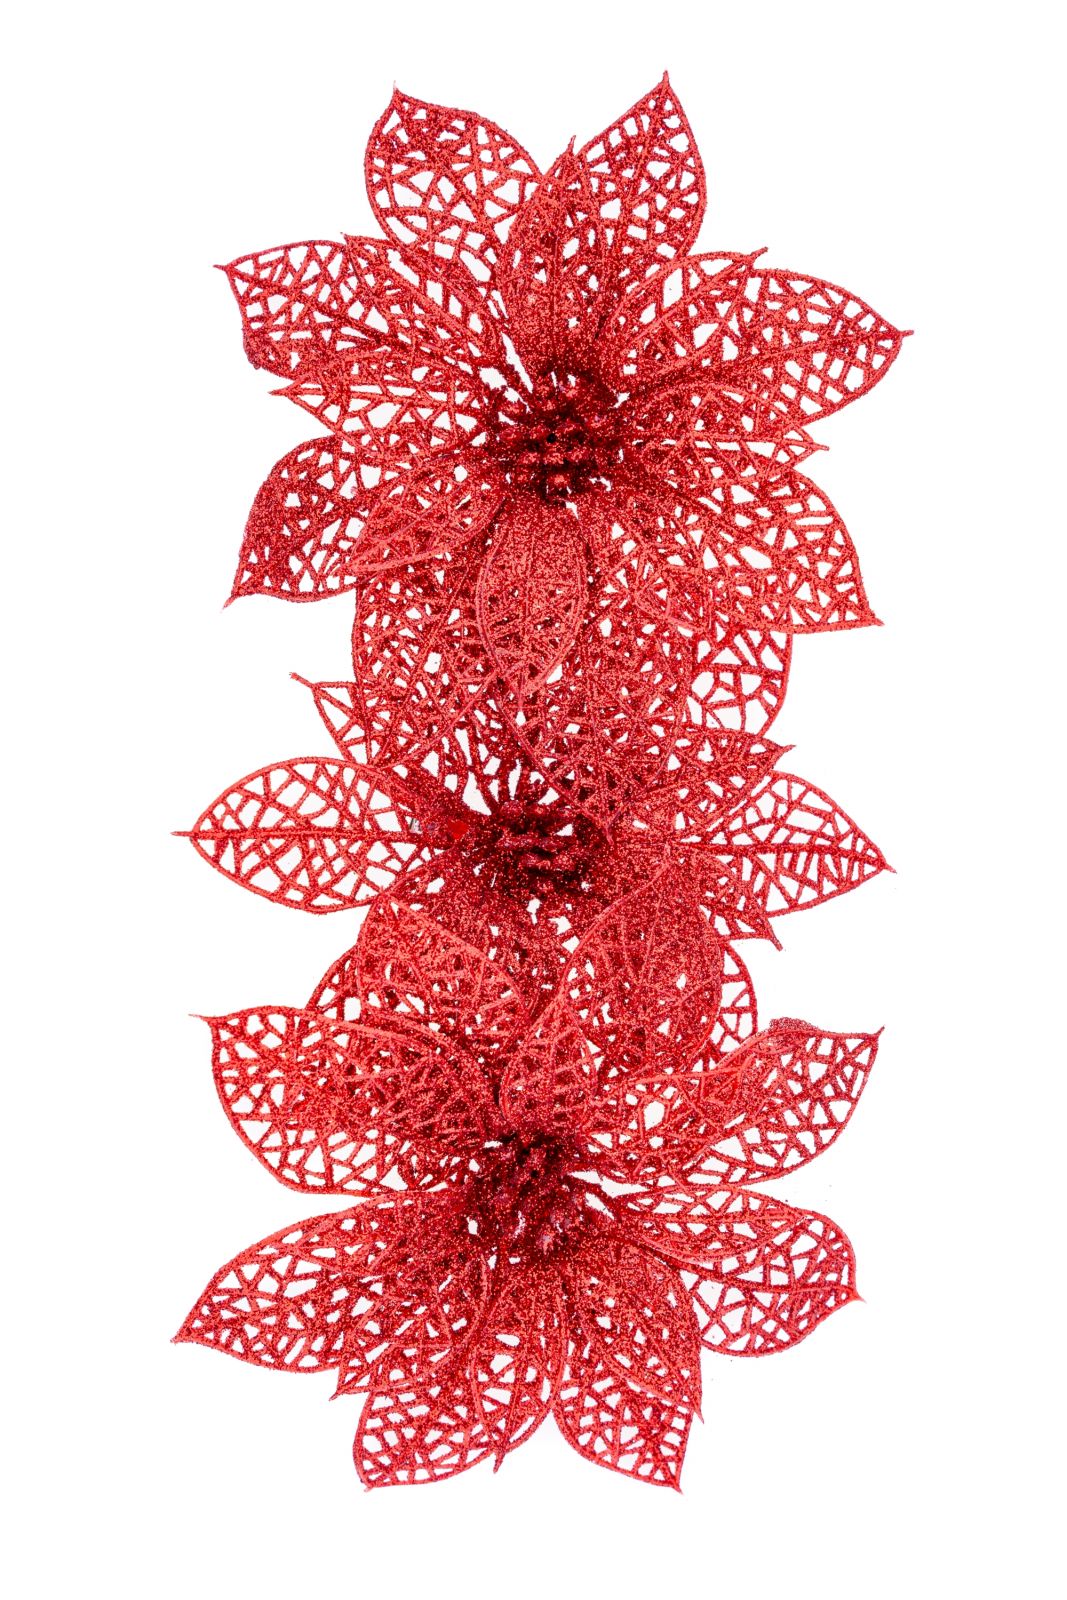 Dekorace přízdoba s glitry Vánoční růže na klipu 15cm - 1květ